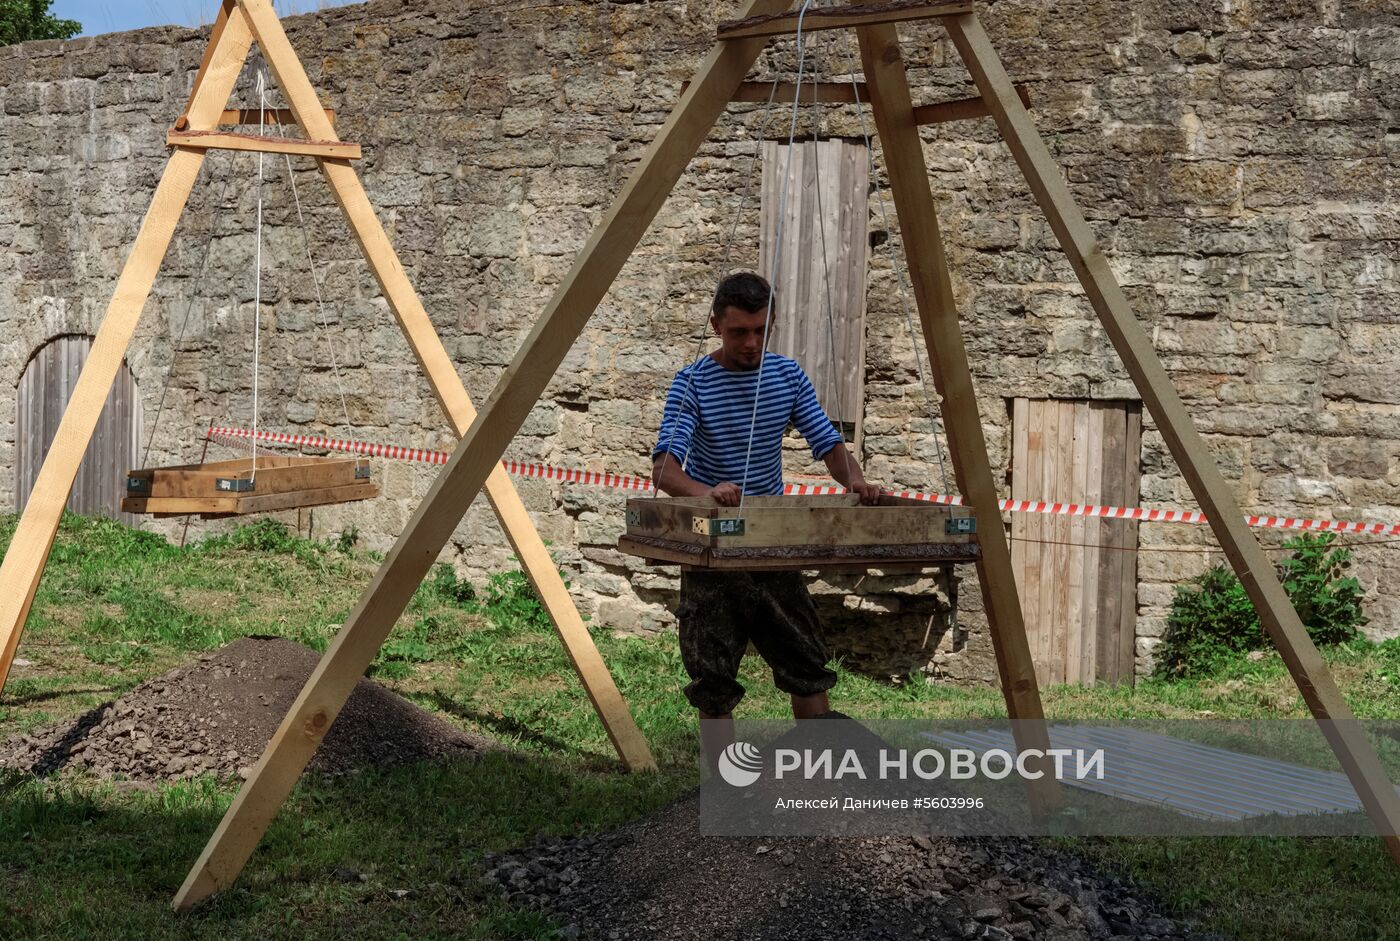 Археологические раскопки в крепости Копорье